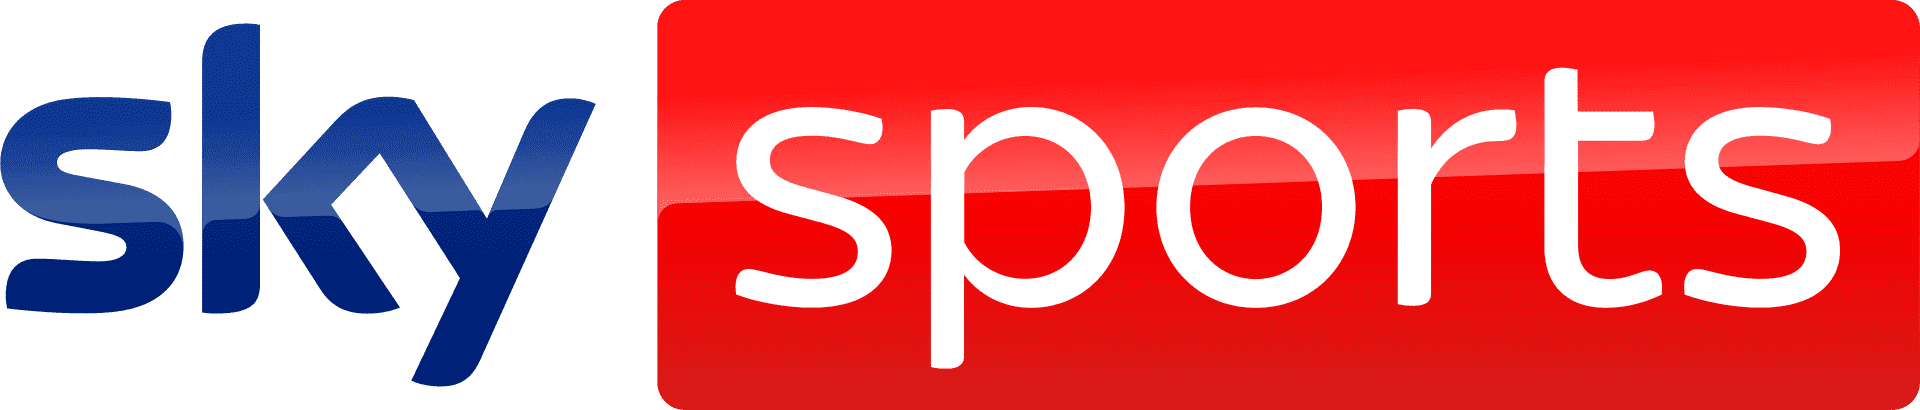 Sky_Sports_logo_2020.svg